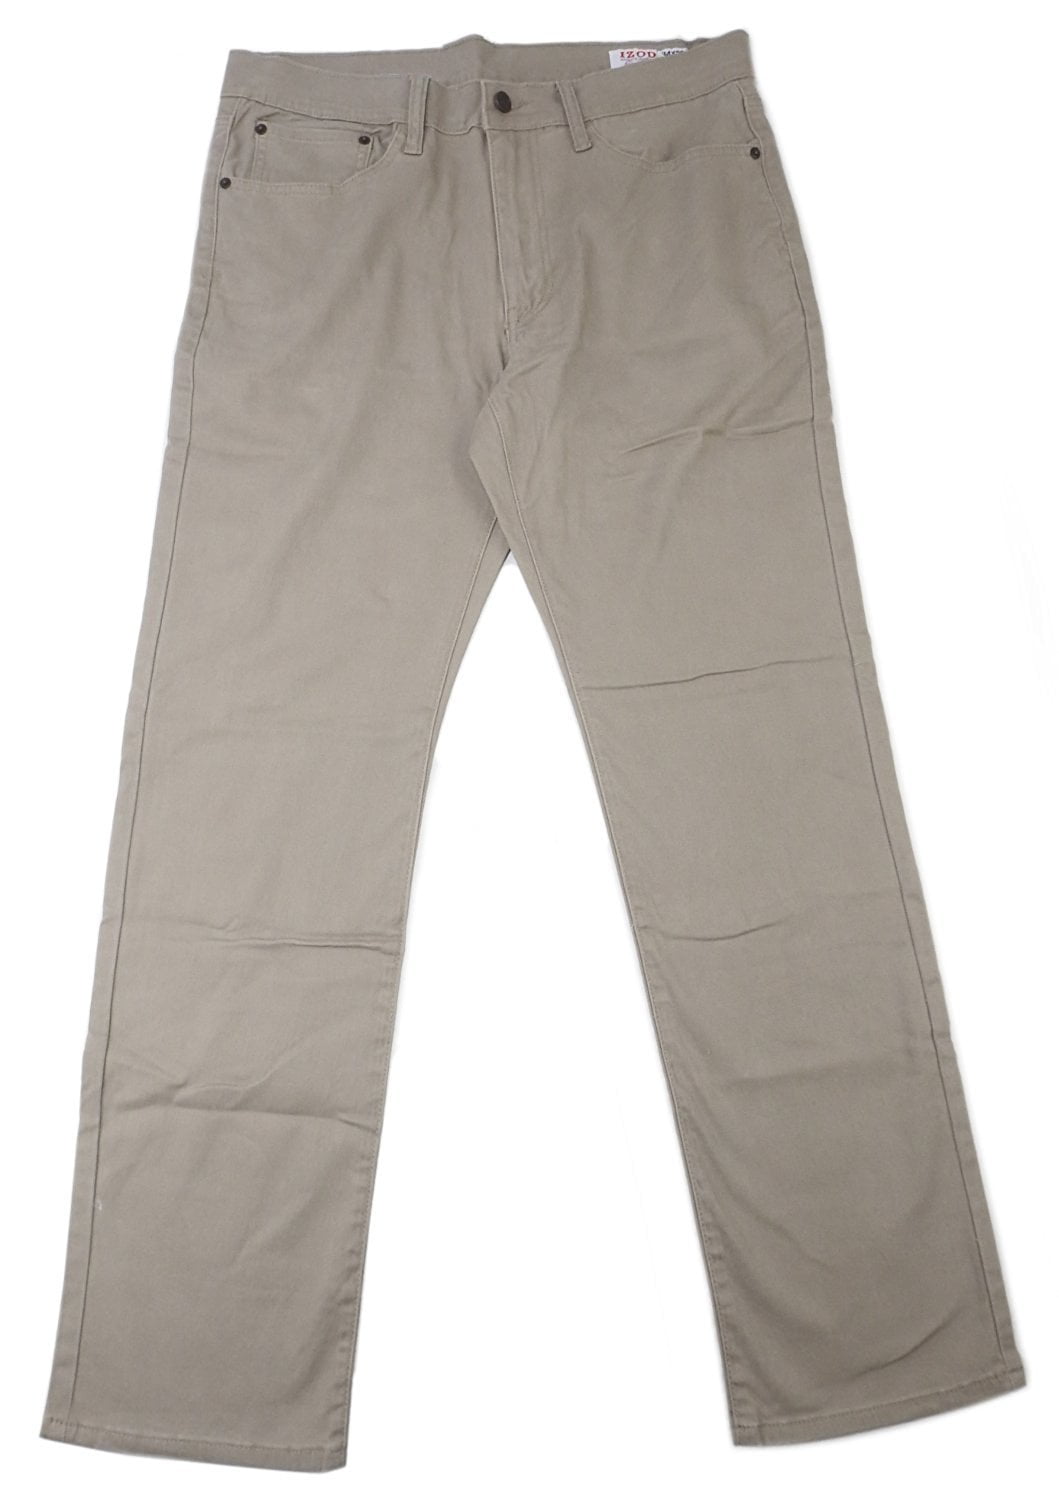 IZOD Mens Size 34x32 Straight Fit-Stretch Pants, Tan - Walmart.com